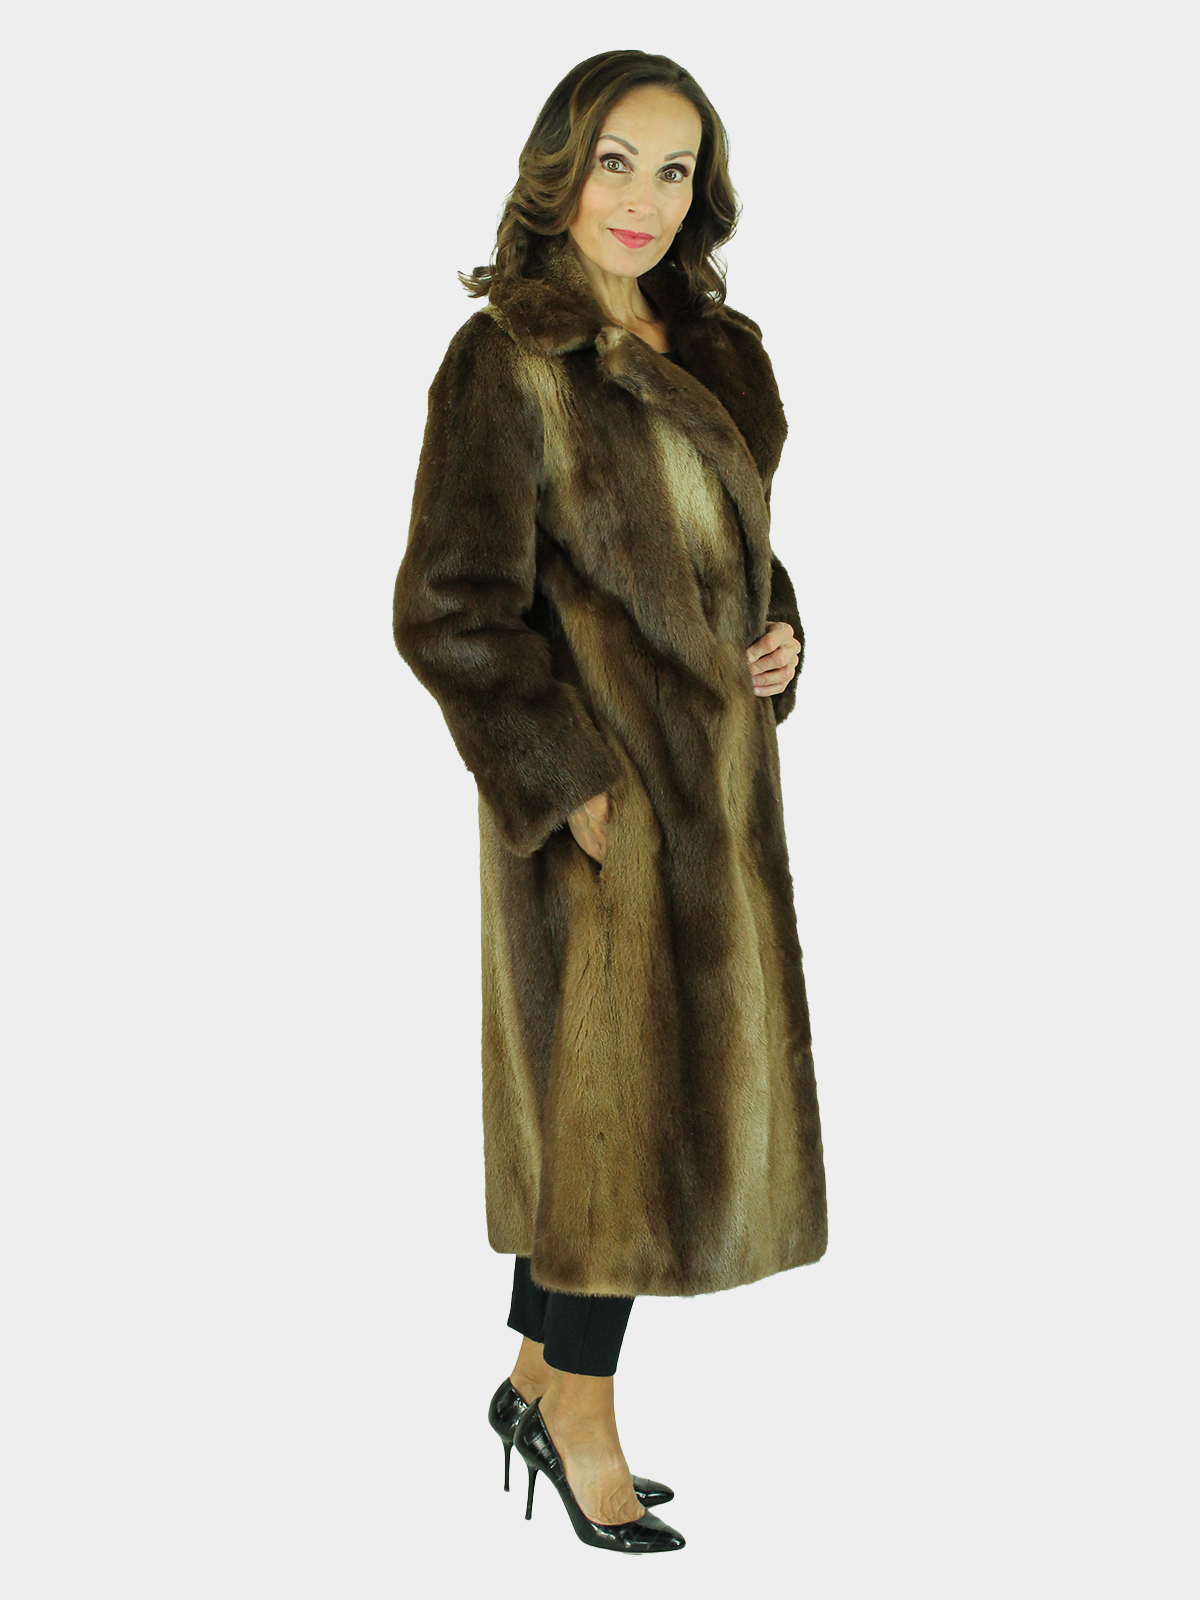 Natural Otter 7/8 Fur Coat -Women's Fur Coat - Small| Estate Furs